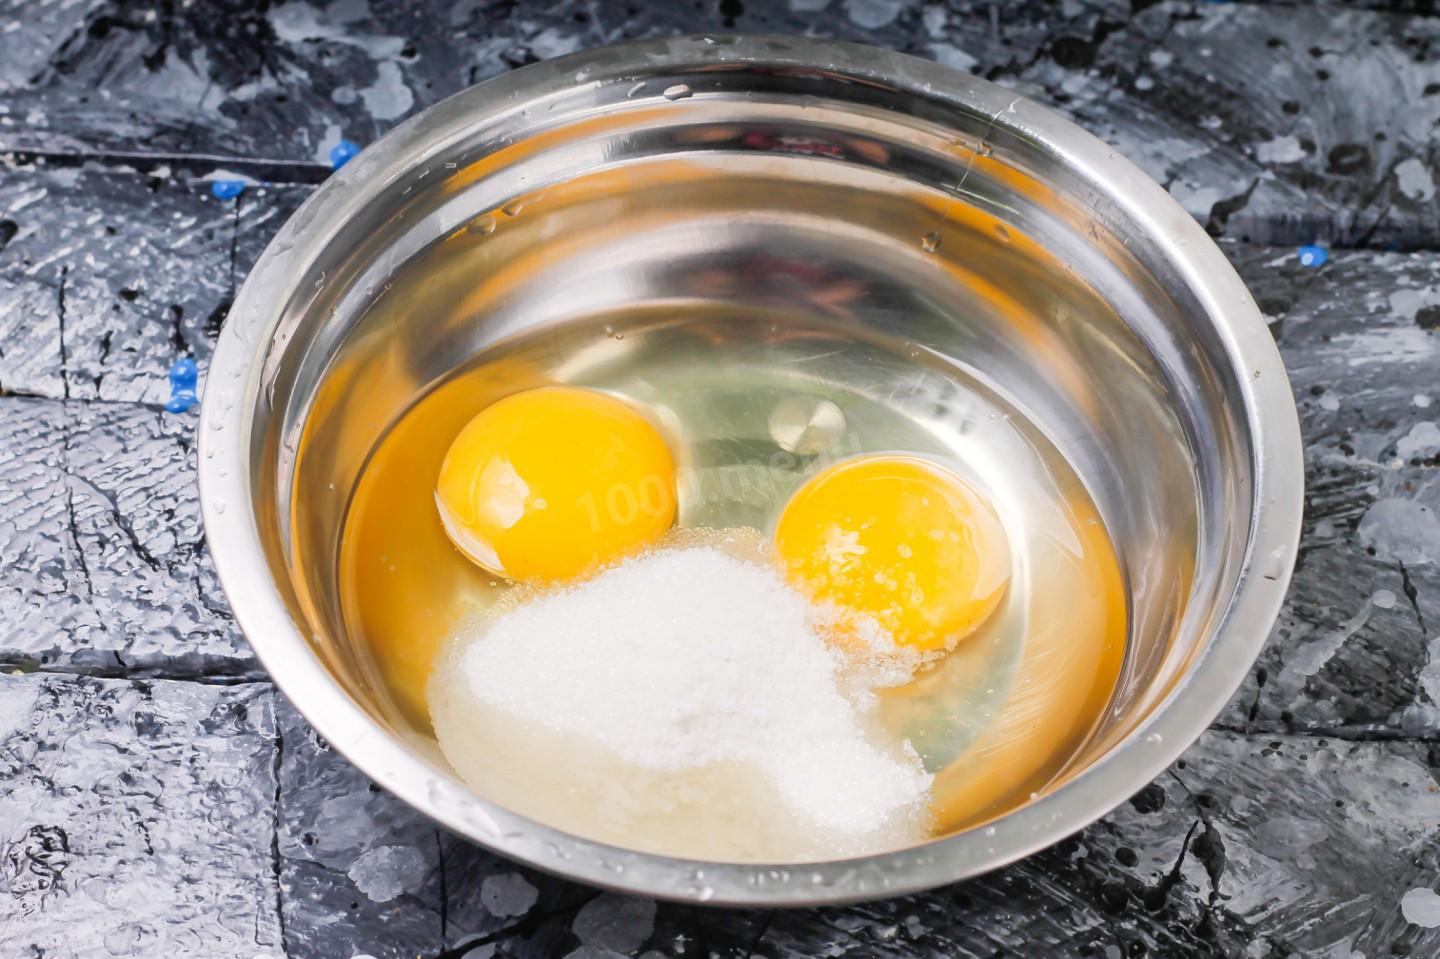 Блины 1 стакан молока 1 стакан кипятка 2 яйца. Разбить яйцо в кипяток. Яйца в кружке кипятком. Пиалка яйцо кипяток. Блины на 1 яйце и кипятке